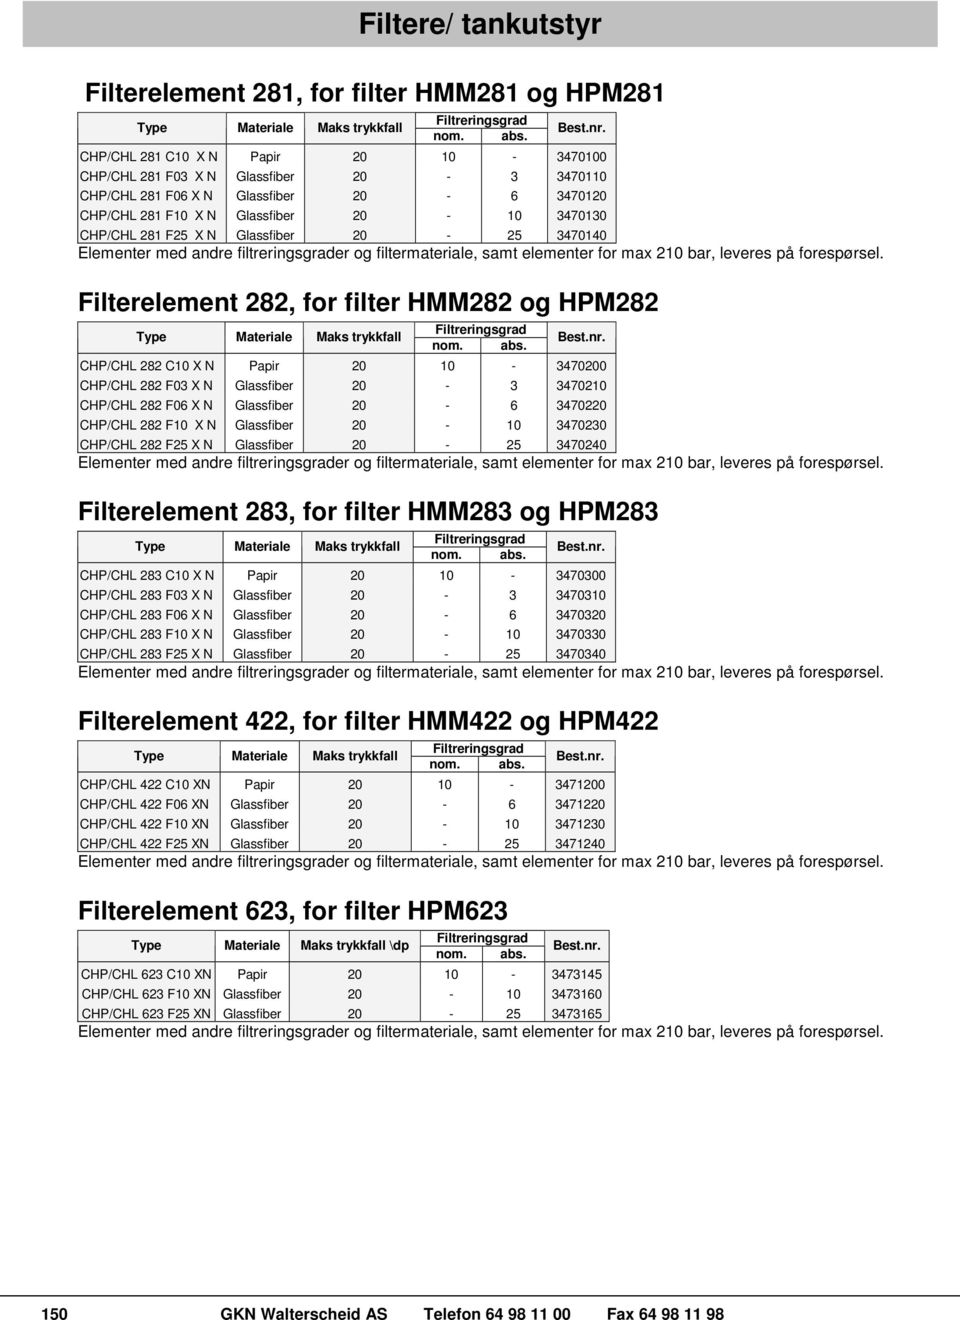 Glassfiber 20-25 3470140 Elementer med andre filtreringsgrader og filtermateriale, samt elementer for max 210 bar, leveres på forespørsel.